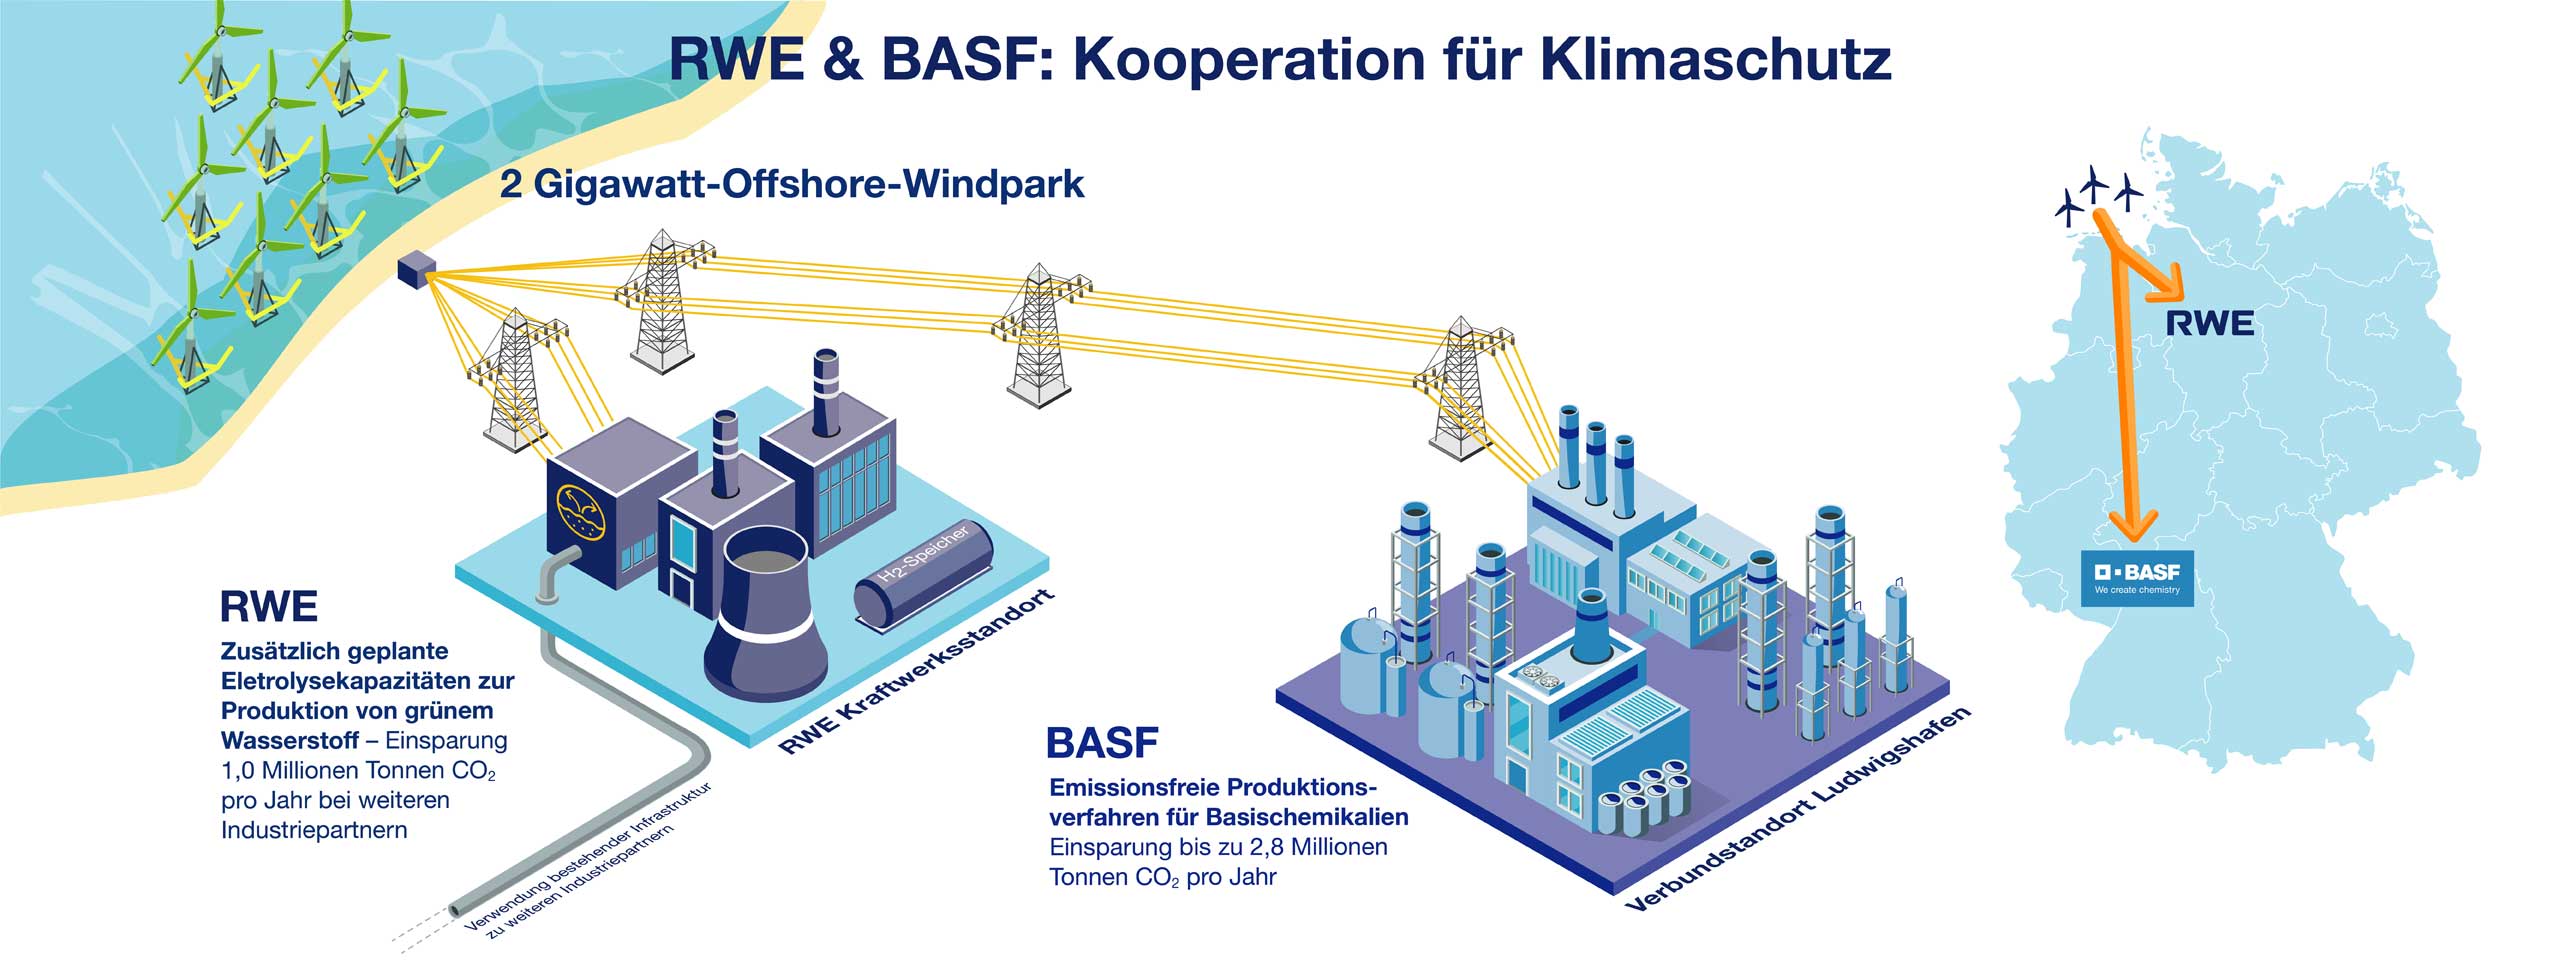 Leuchtturm-Projekt "Offshore-to-x" von RWE und BASF | RWE